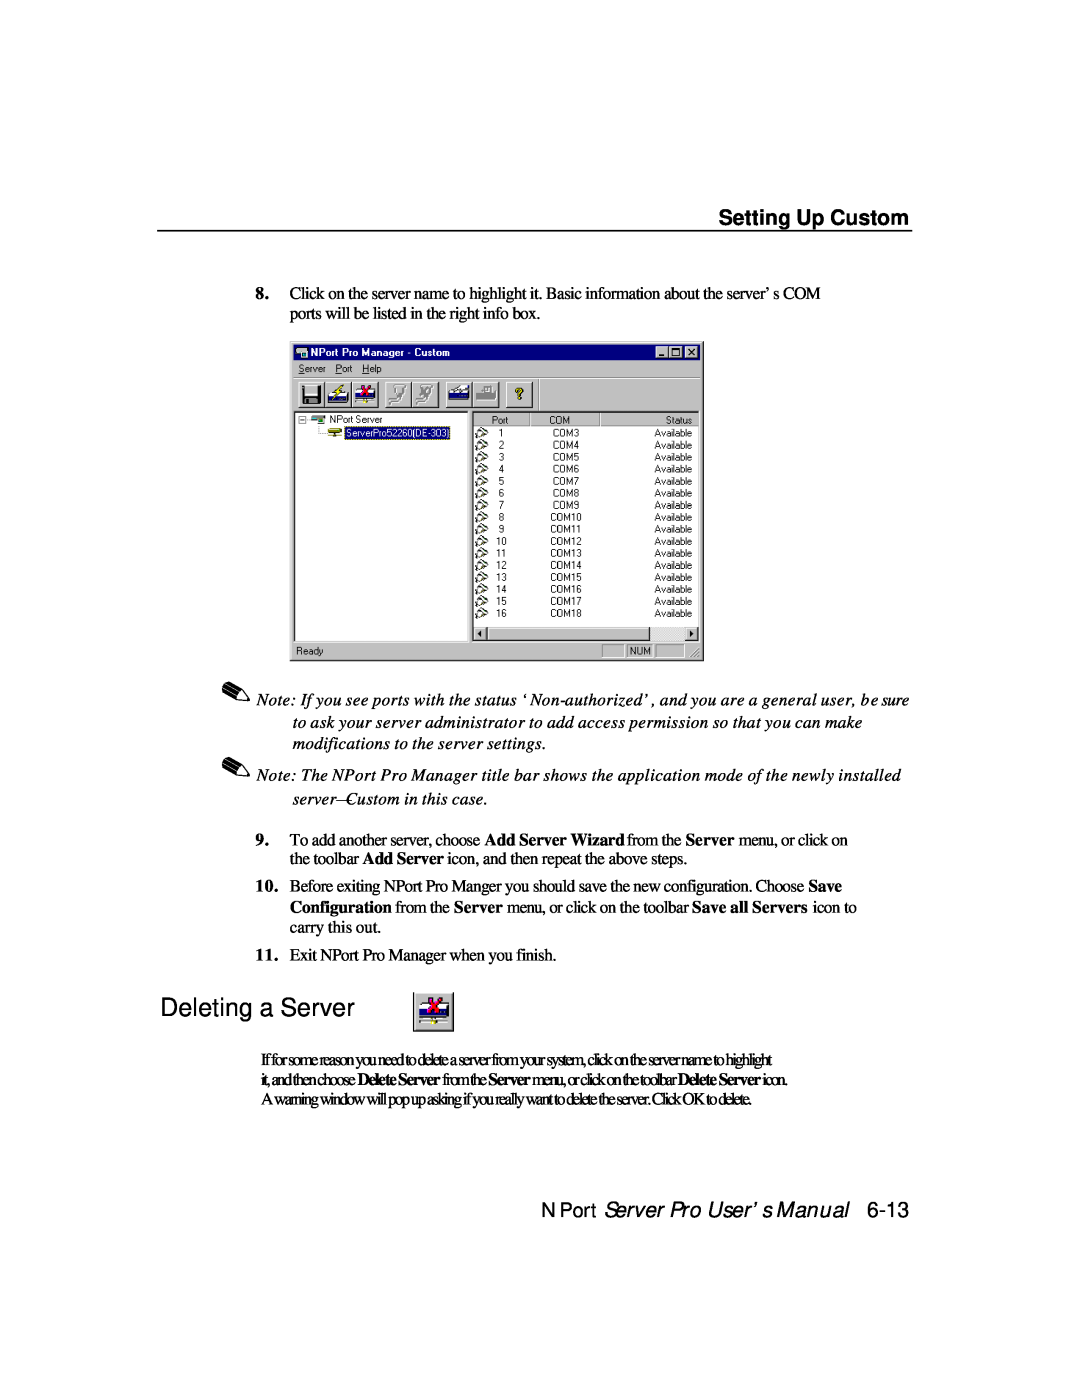 Moxa Technologies DE-308, DE-303 manual Deleting a Server, Setting Up Custom, NPort Server Pro User’s Manual 